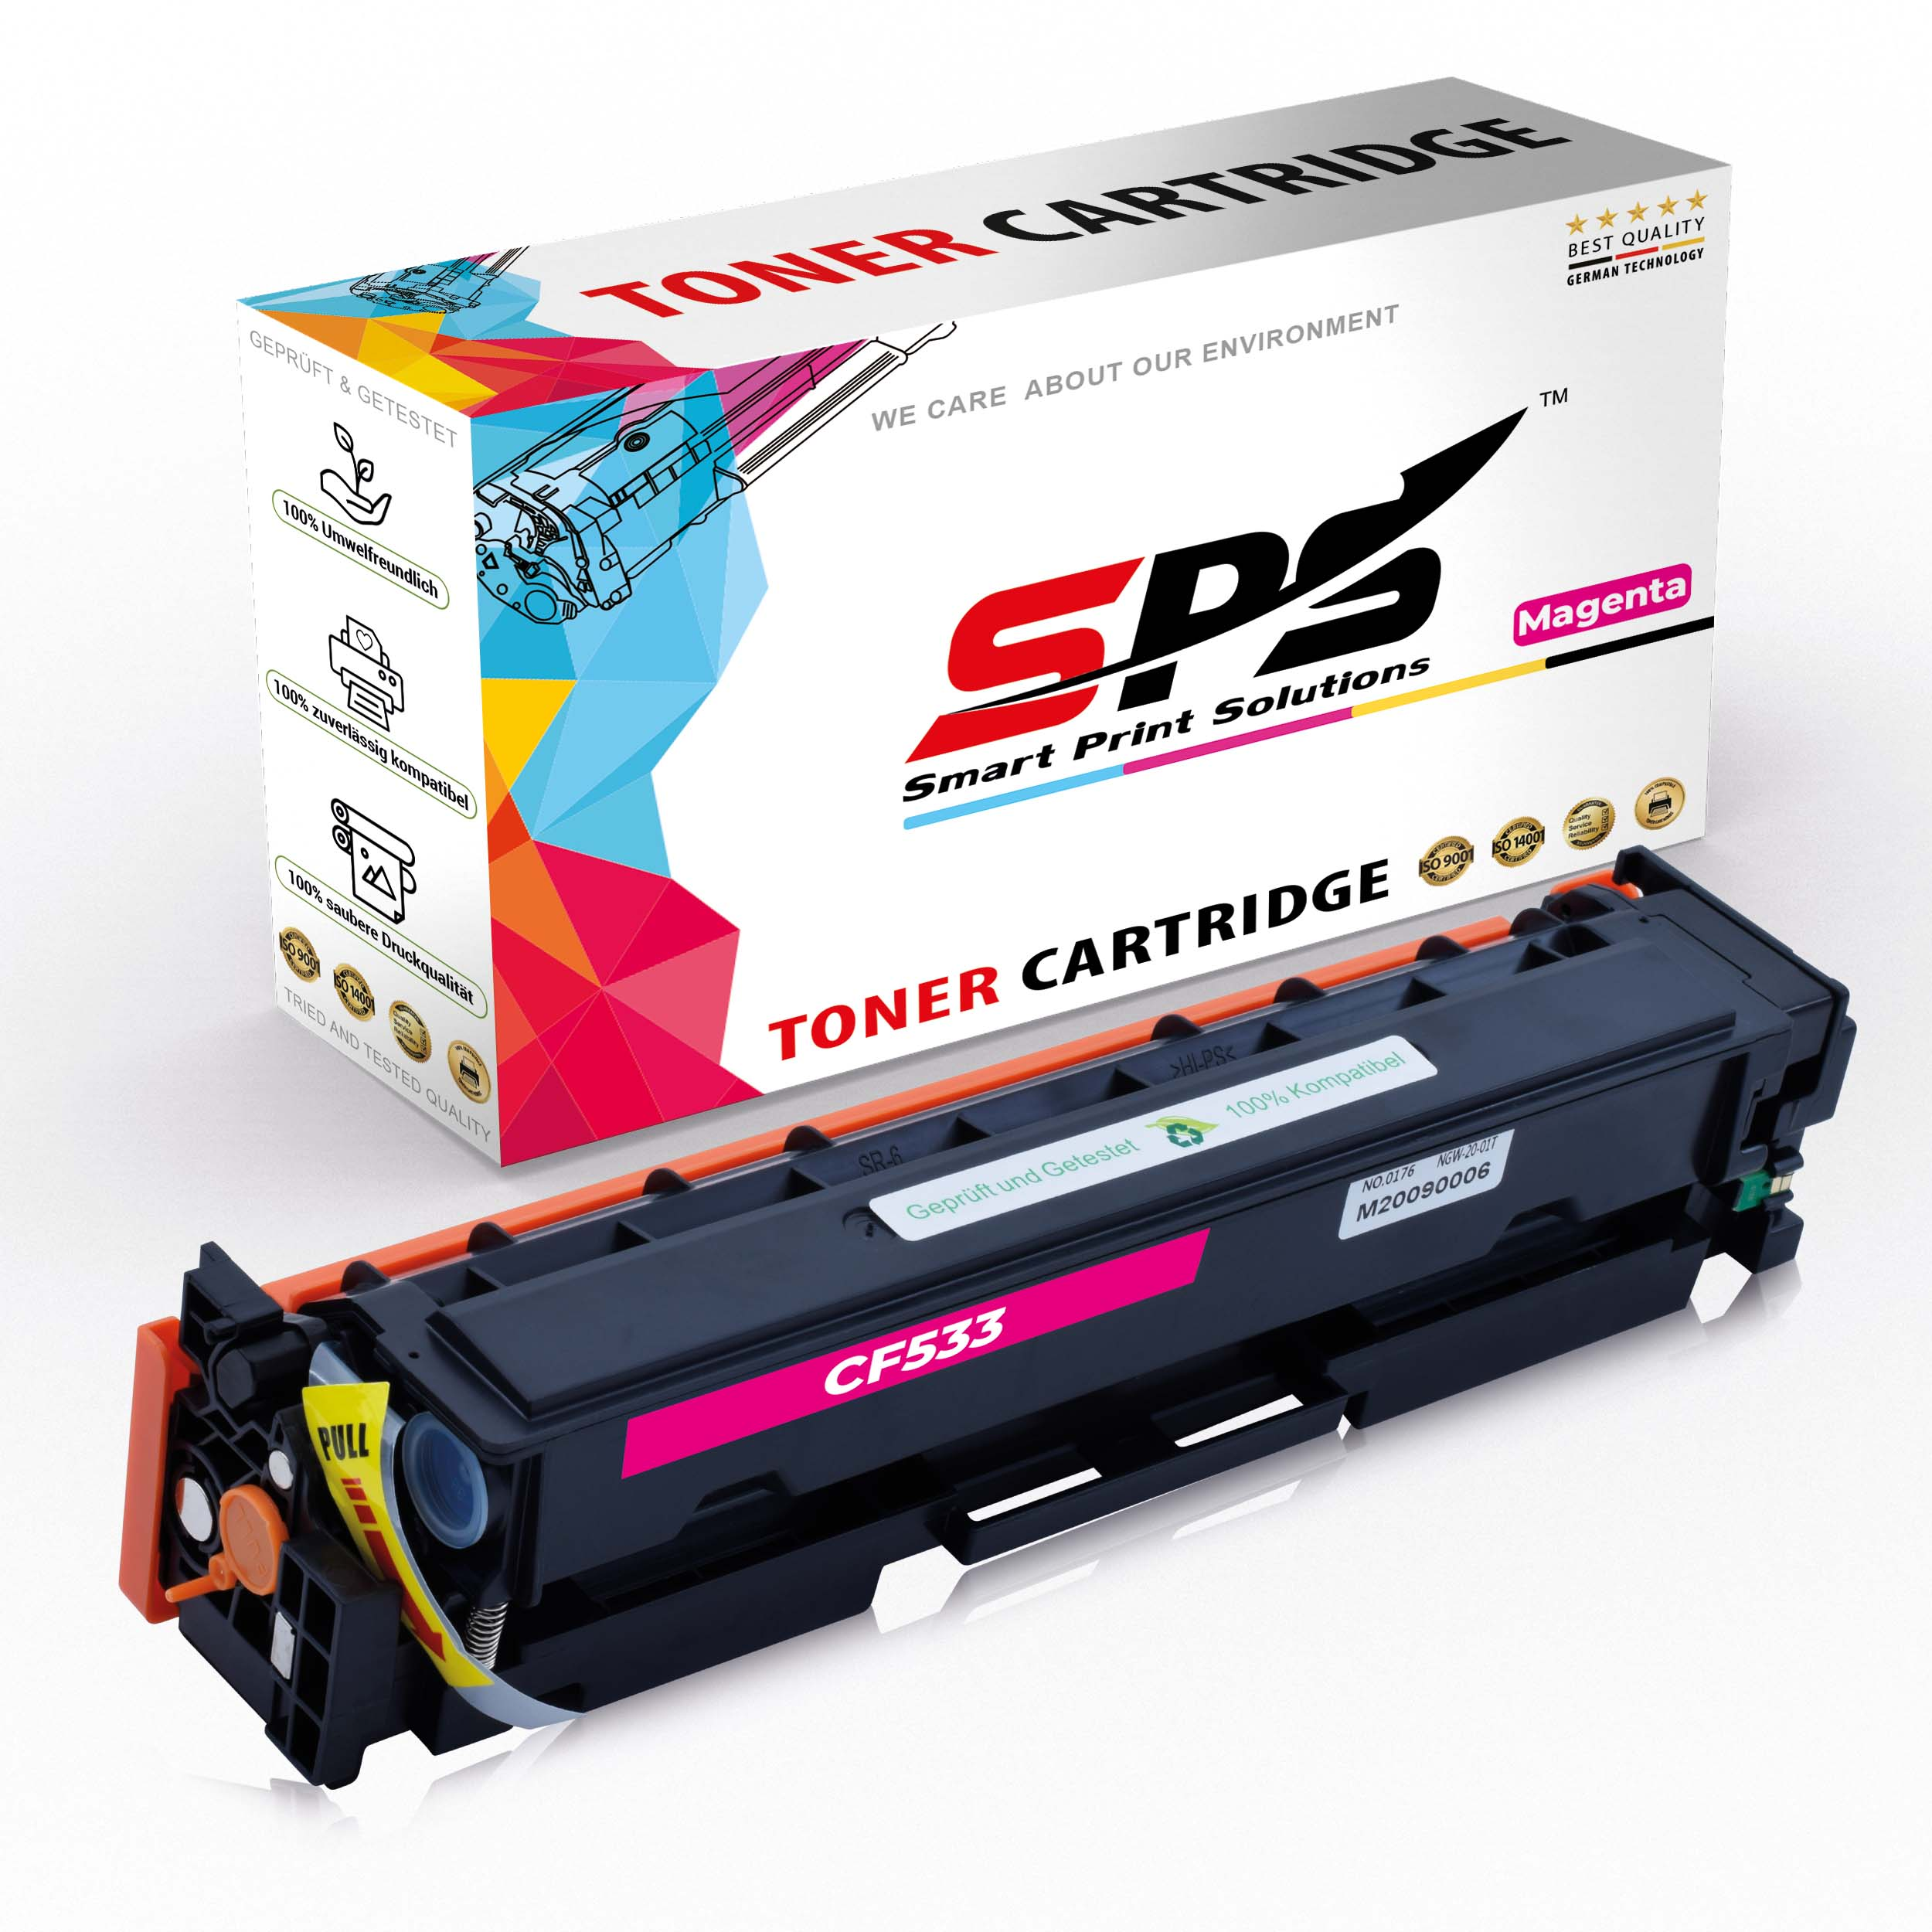 SPS S-22403 205A) (CF533A Magenta / Toner